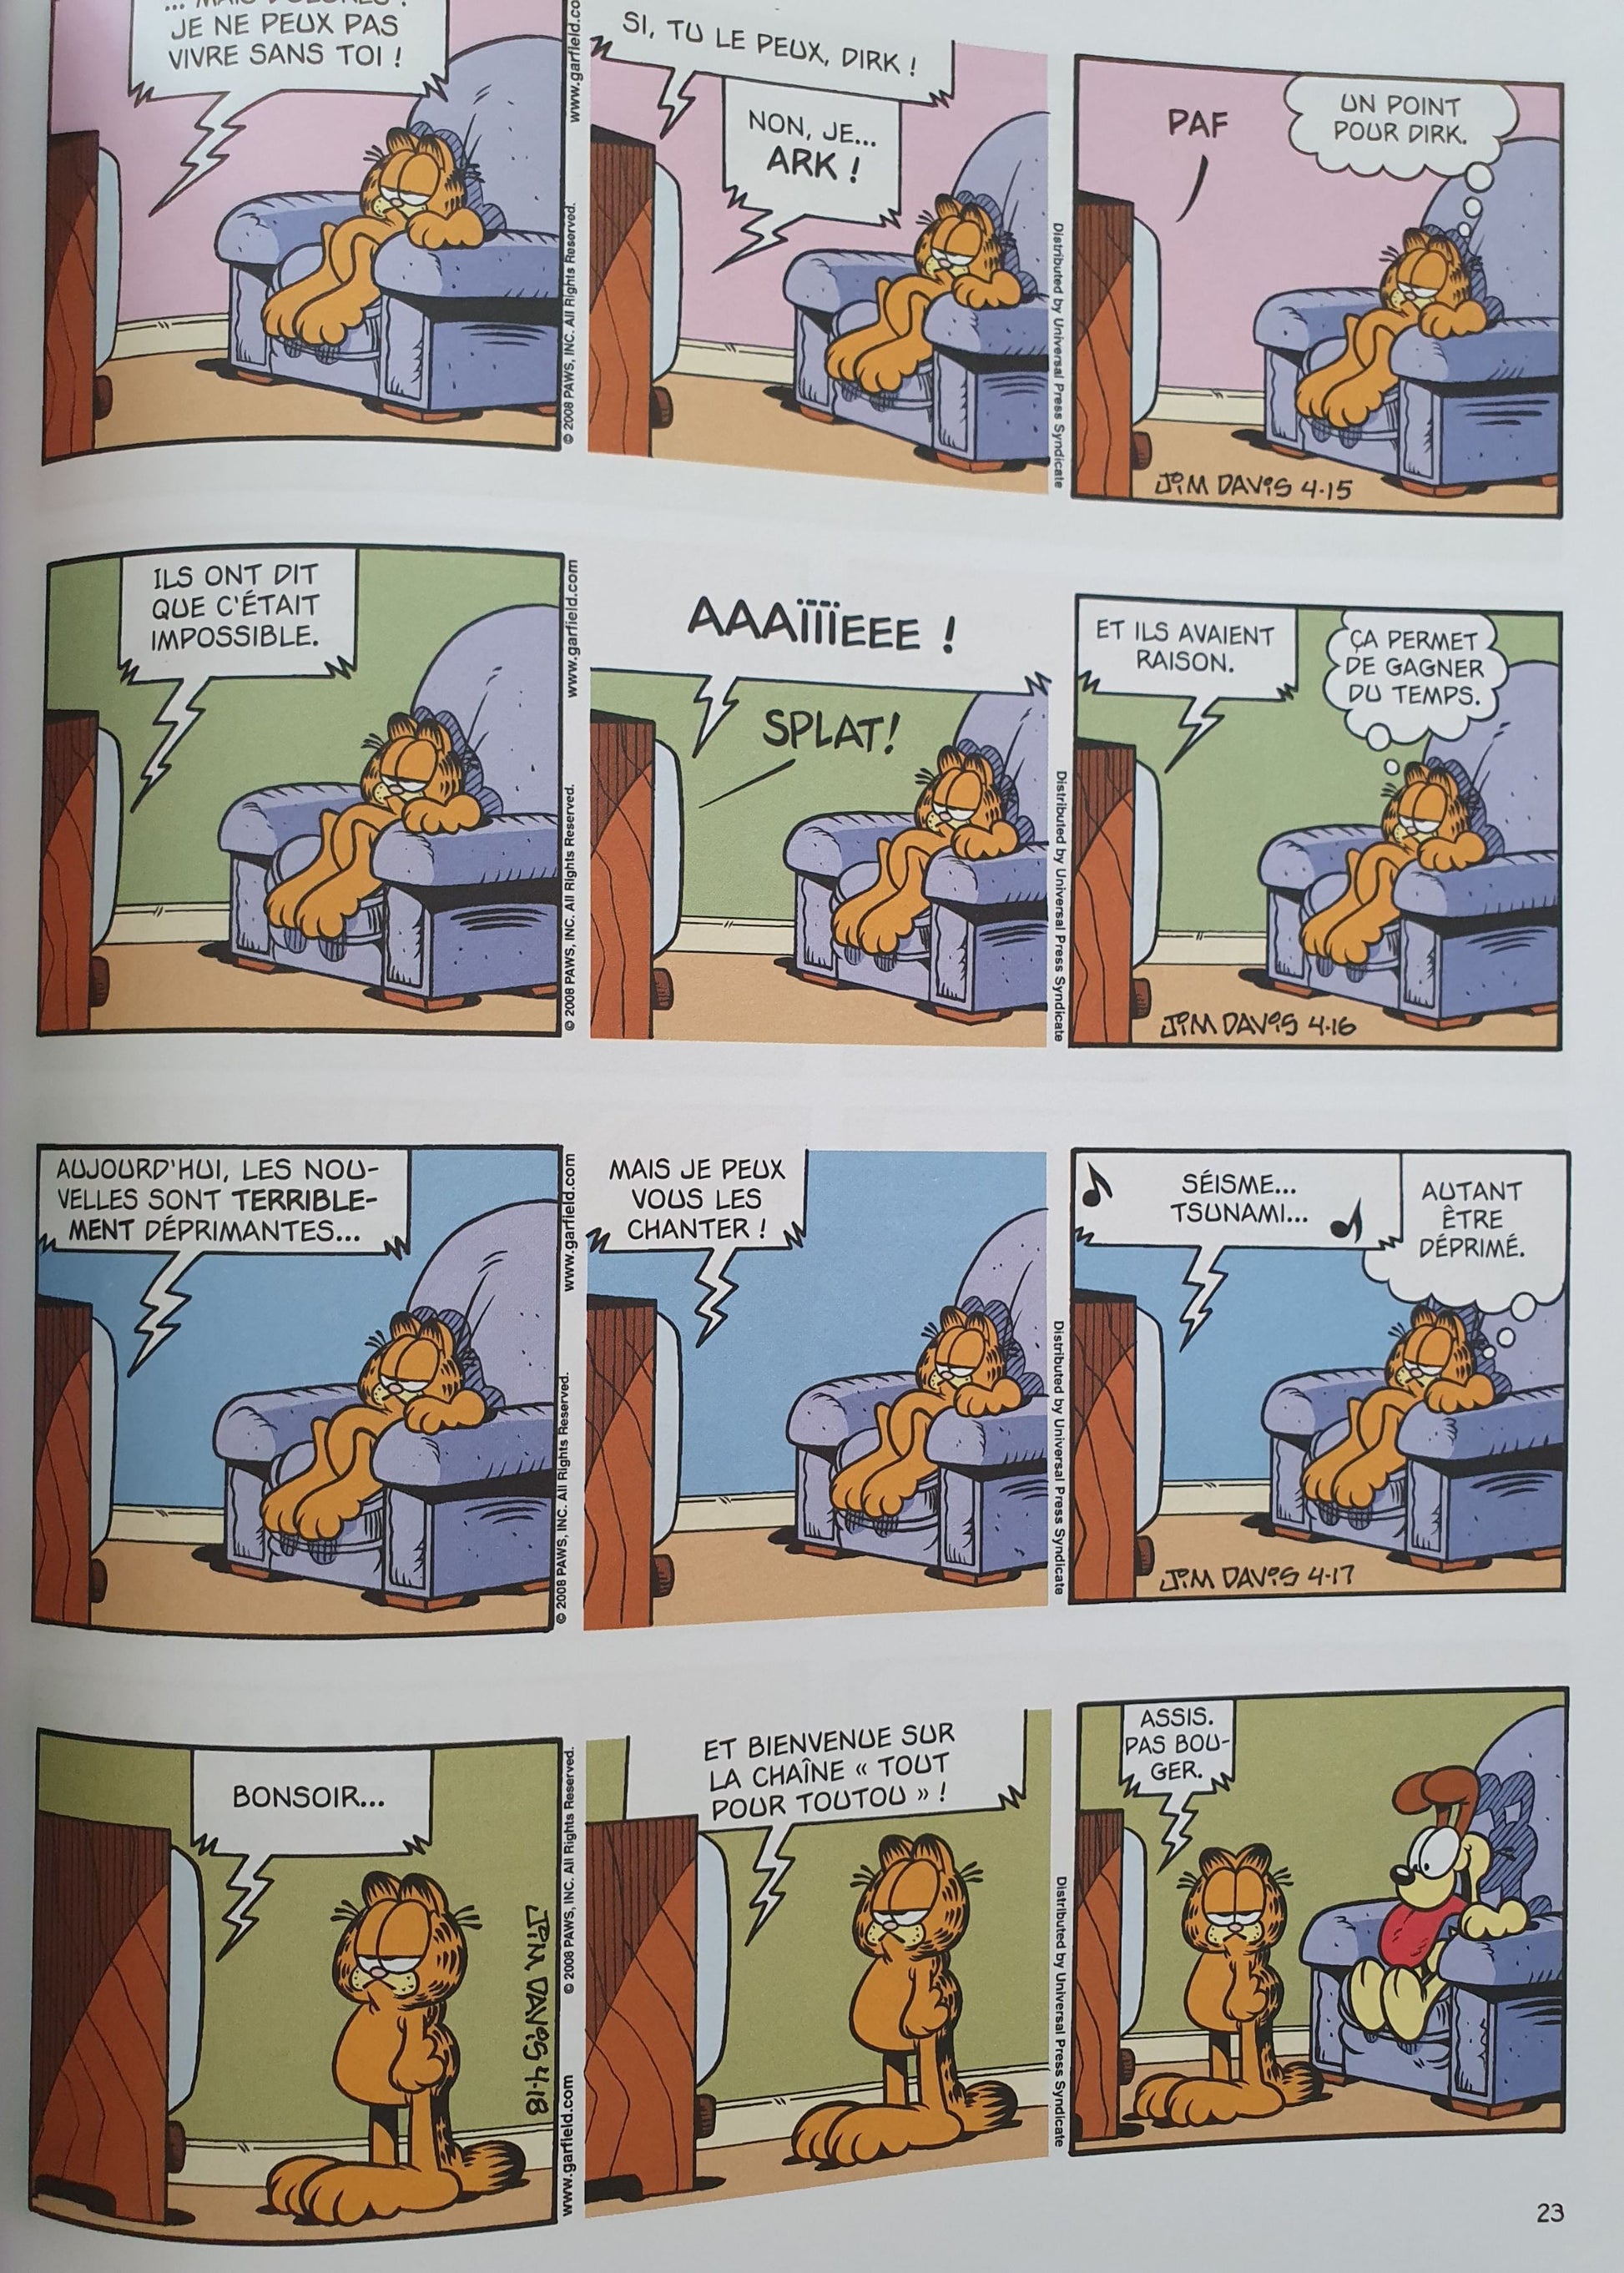 Garfield - Le dindon de la farce Like New Not Applicable  (4598533455927)